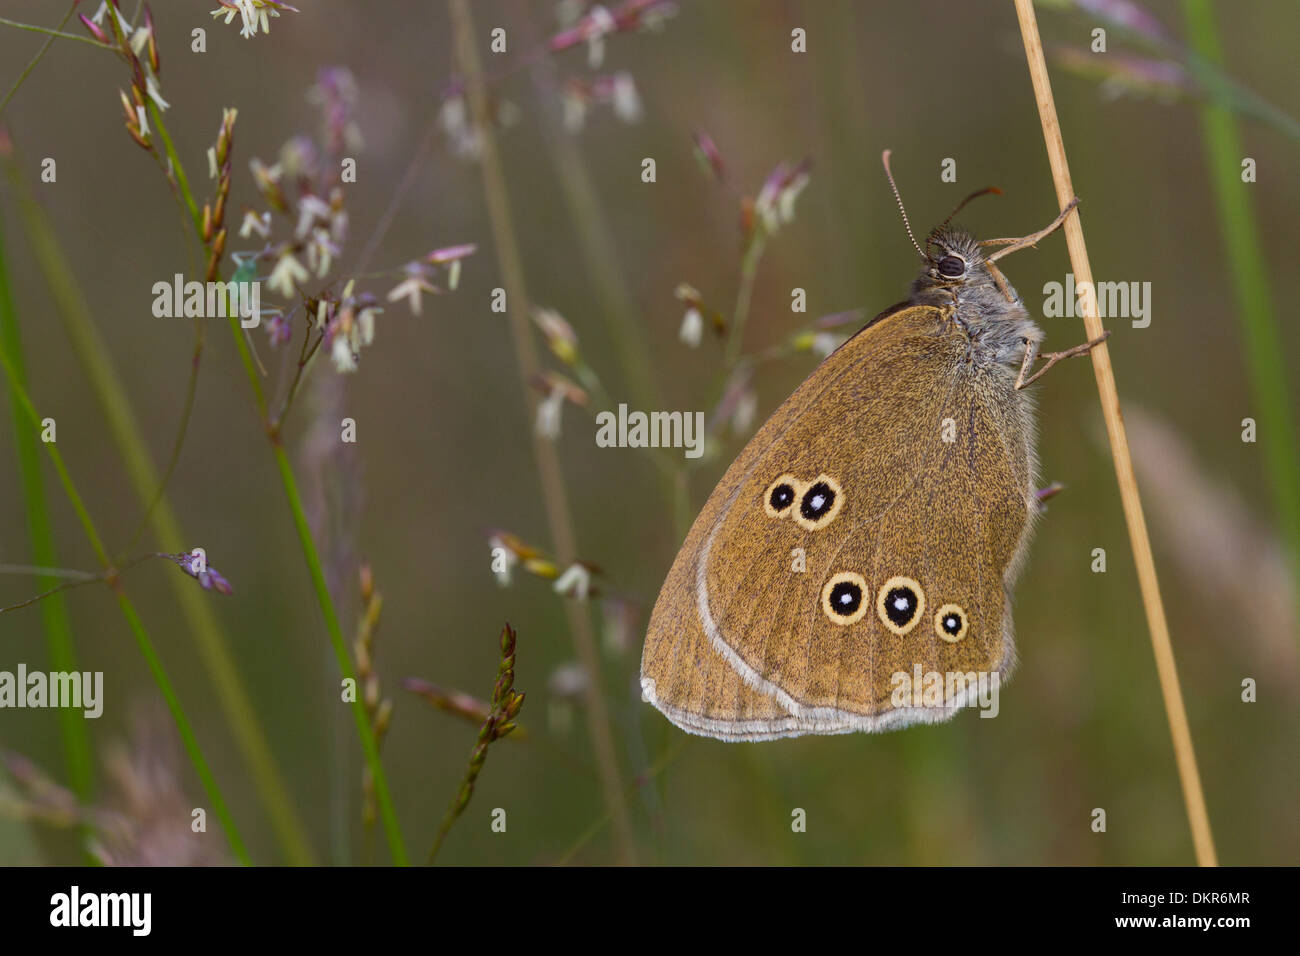 (Un papillon Aphantopus hyperantus), dessous, de repos parmi les graminées. Powys,Pays de Galles. Juillet. Banque D'Images